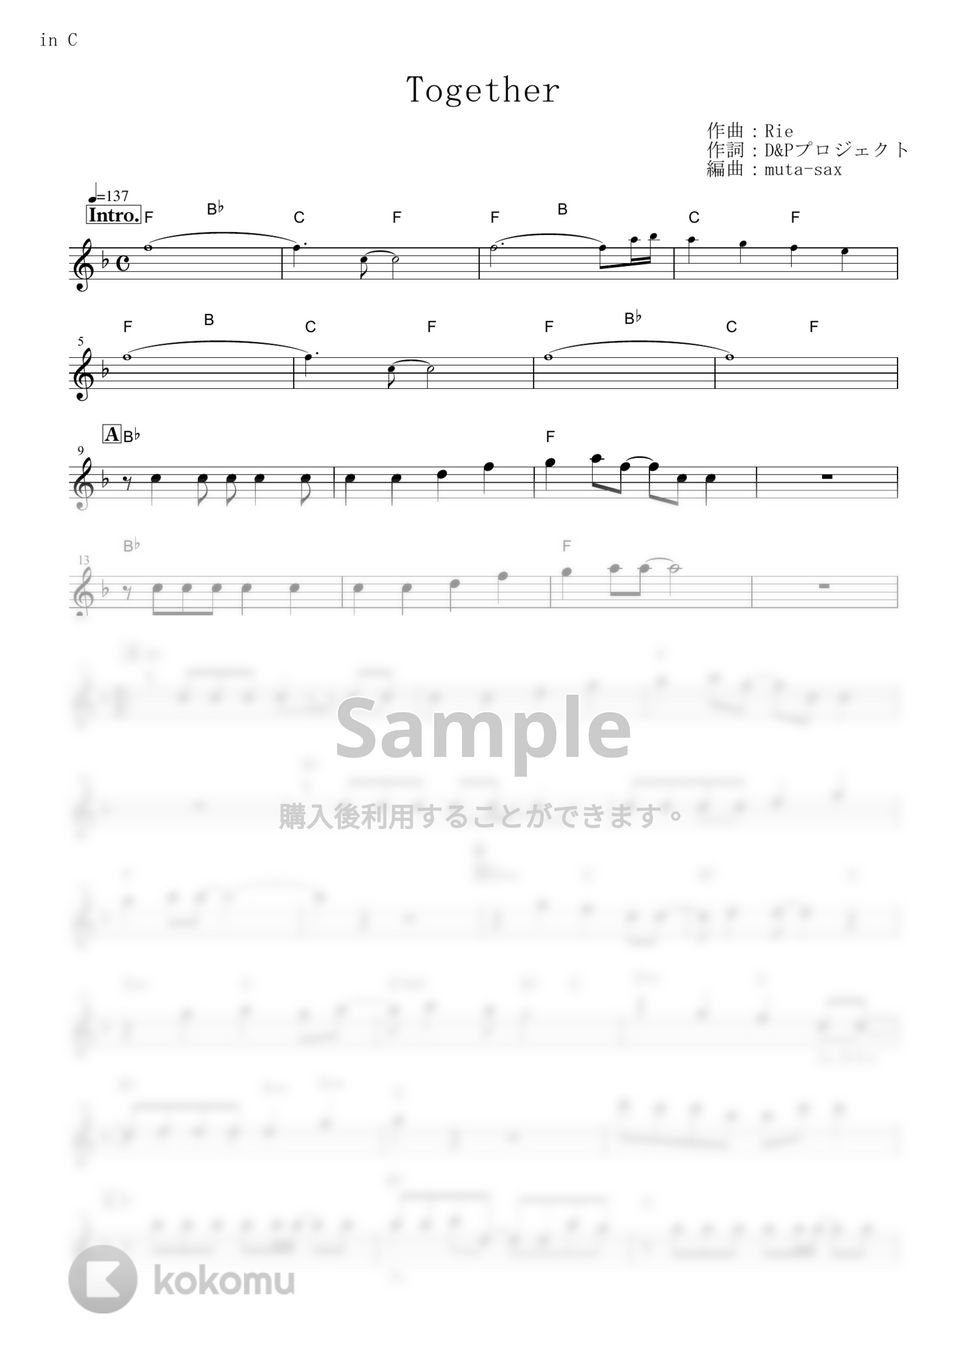 あきよしふみえ - Together (『ポケットモンスター ダイヤモンド&パール』 / in C) by muta-sax